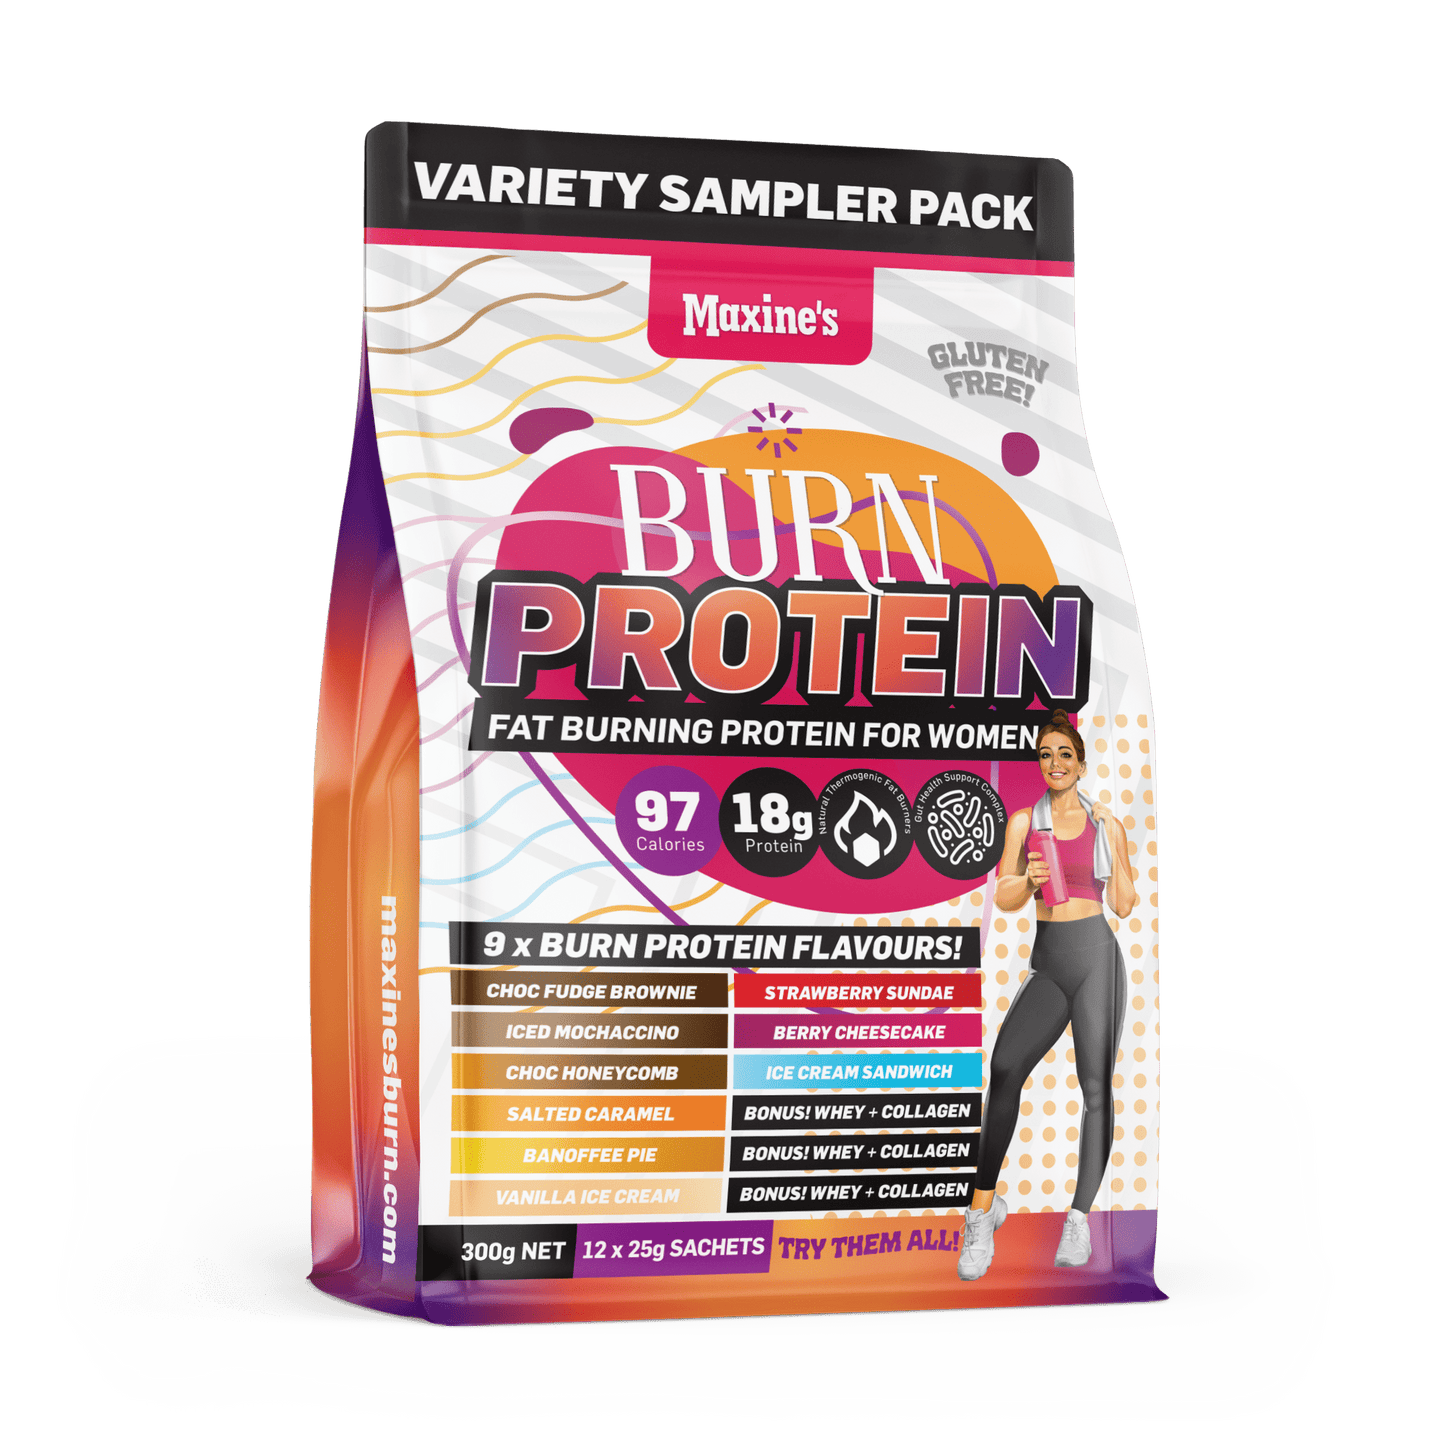 Protein Variety Sampler Pack